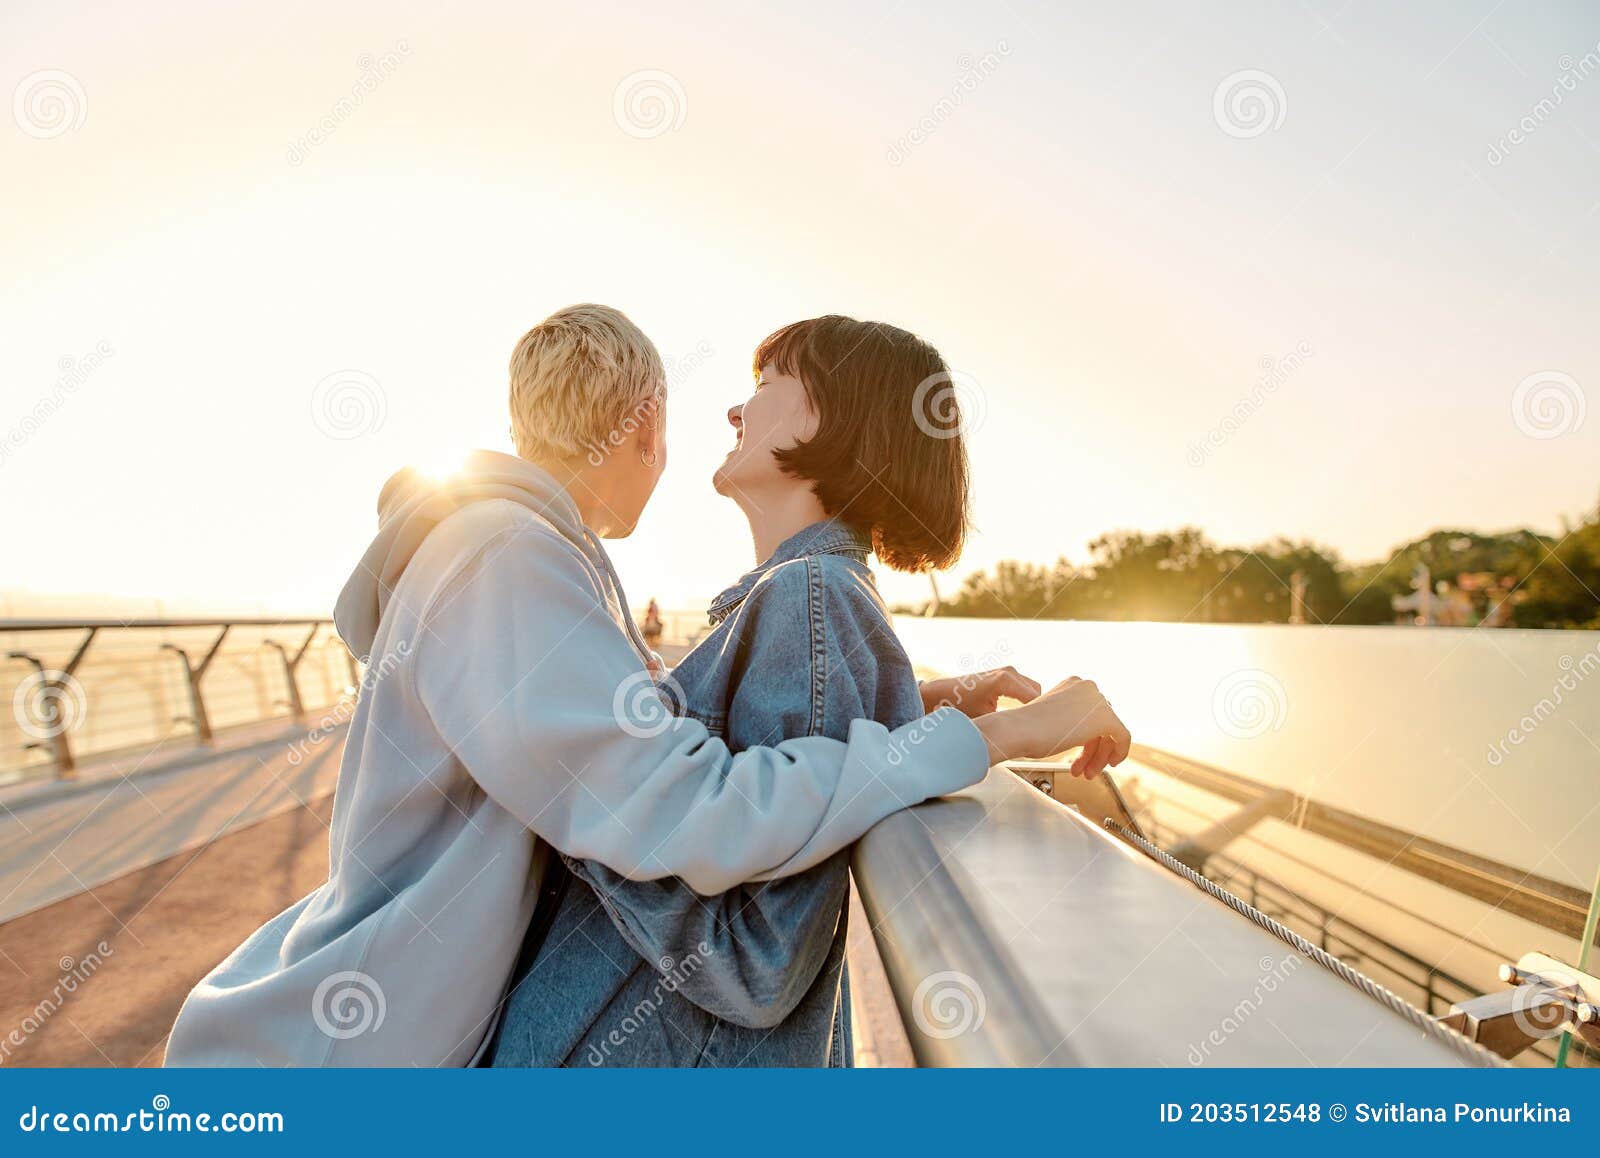 两个年轻可爱的女同性恋者拥抱 库存图片. 图片 包括有 嘴唇, 拥抱, 人们, 魅力, 爱好健美者, 表面 - 38091913